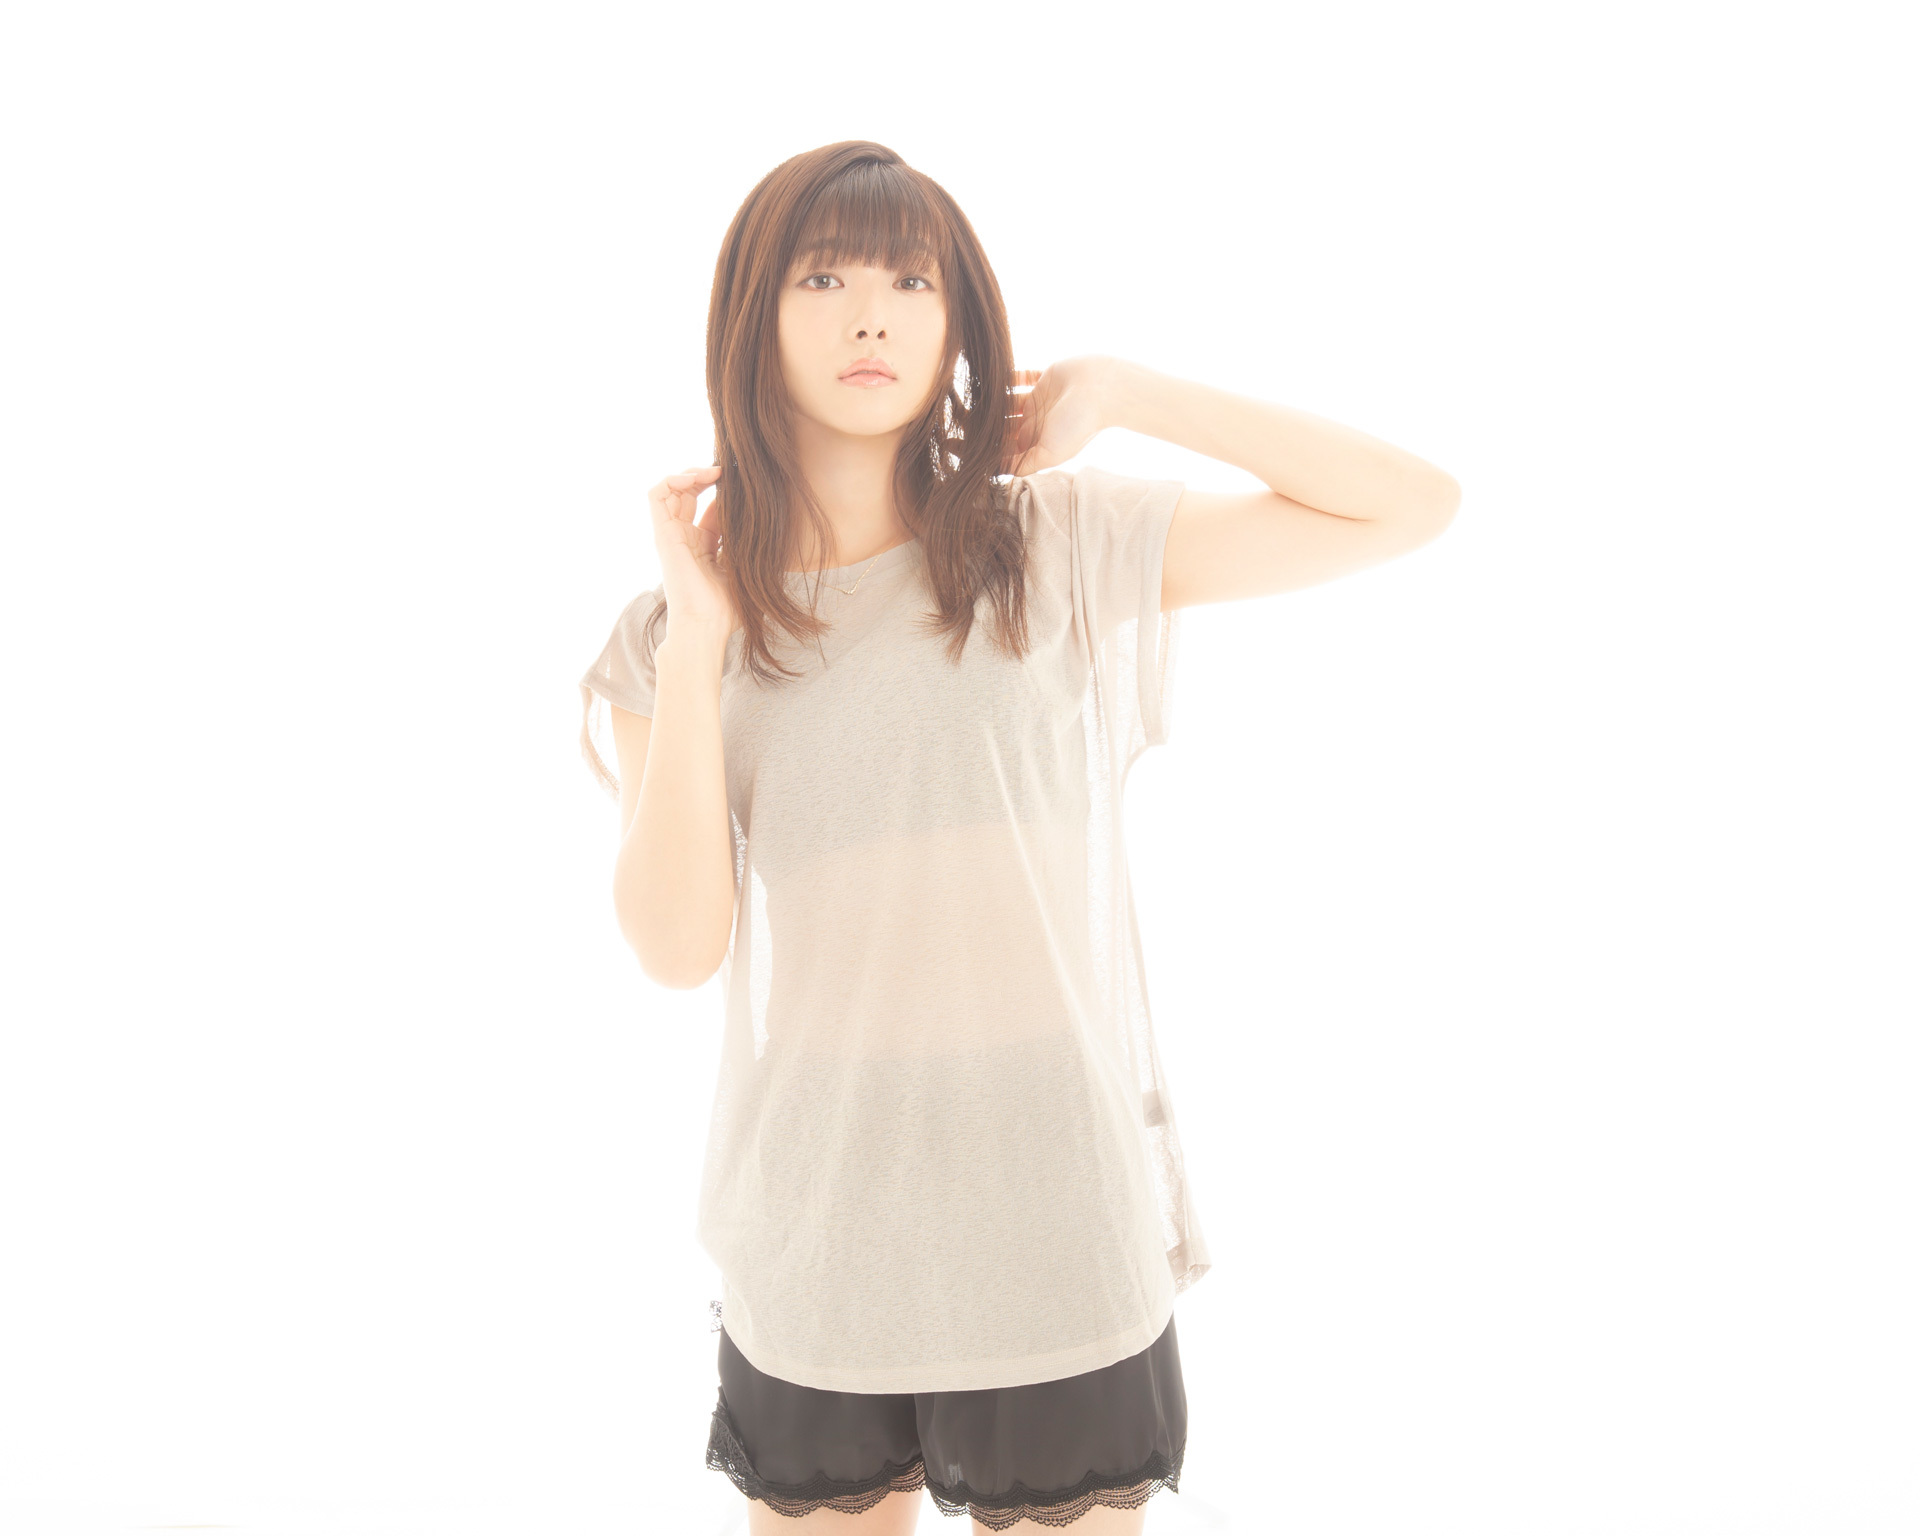 インタビュー 私 を構成する11曲です 沼倉愛美が2ndアルバム アイ をリリース P3 アキバ総研